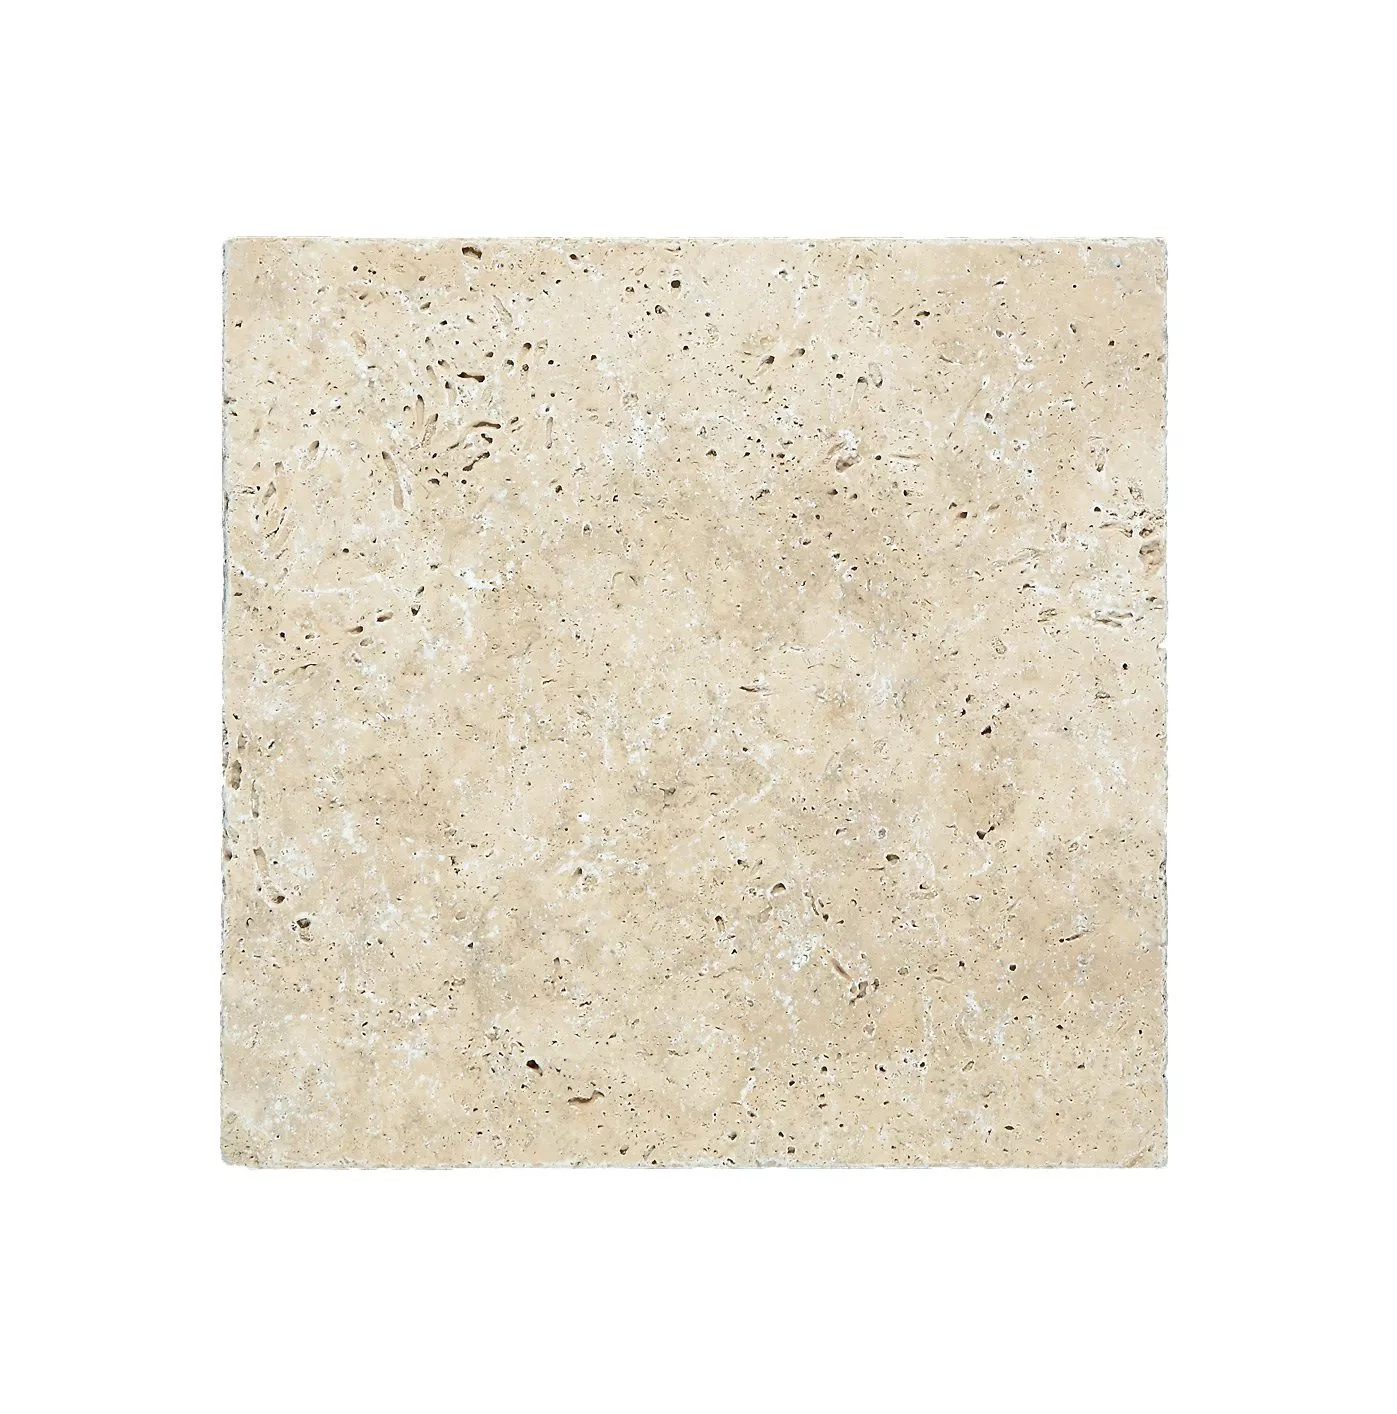 Πλακάκια Aπό Φυσική Πέτρα Είδος Ασβεστόλιθου Barga Μπεζ 30,5x30,5cm